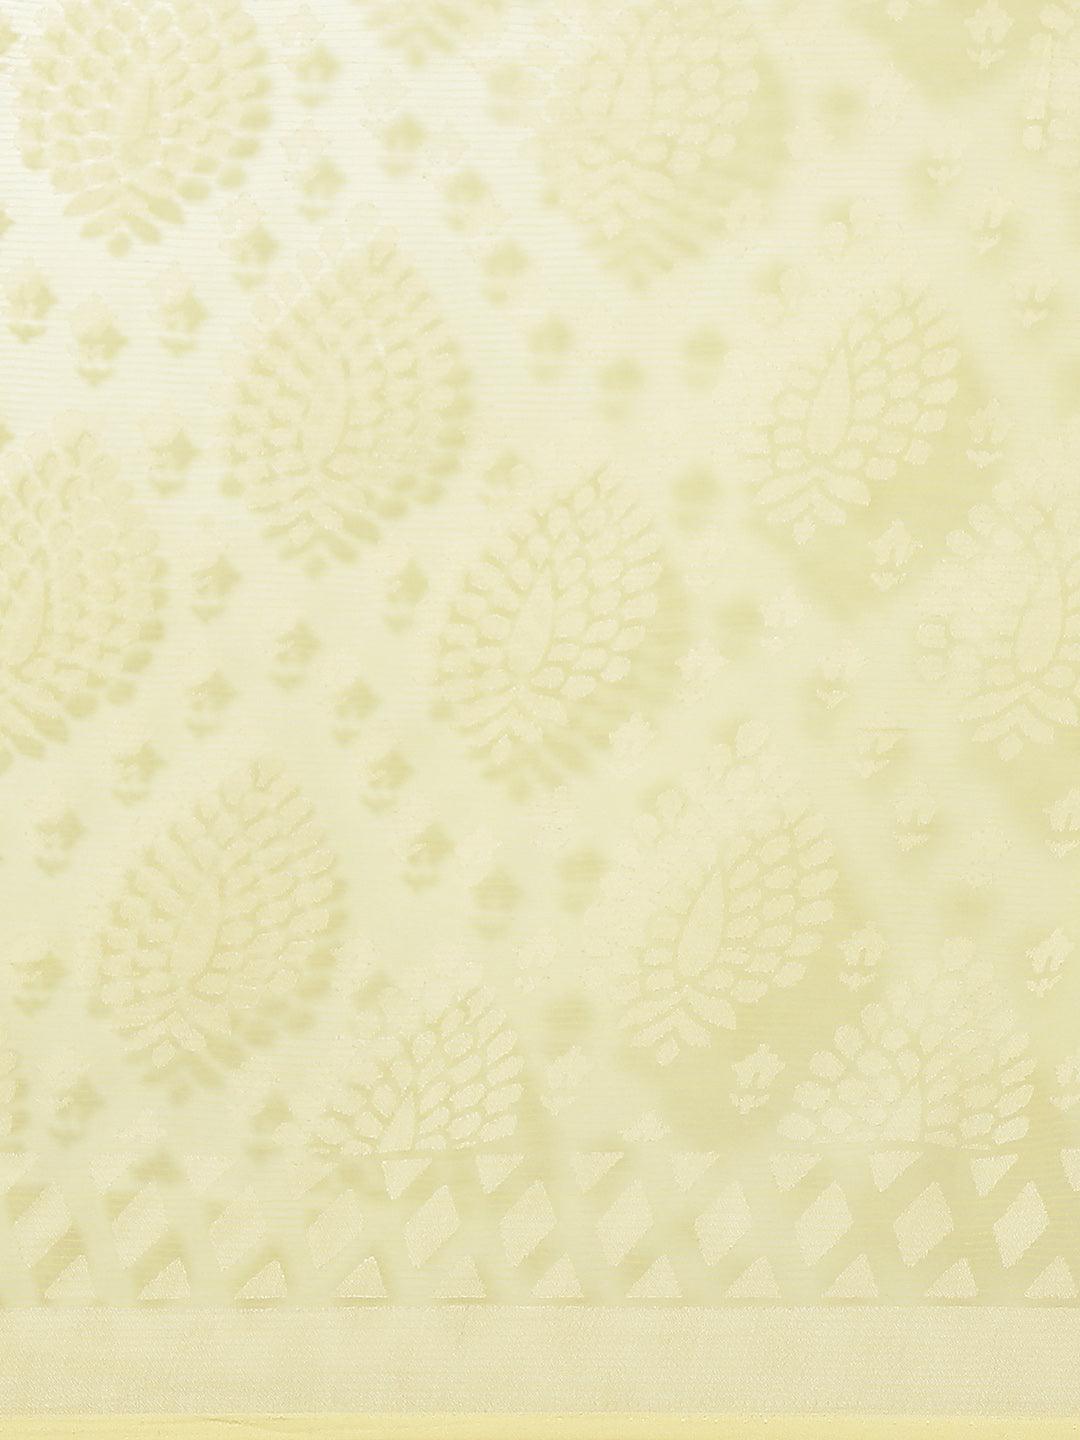 Yellow Woven Design Tissue Saree - Libas